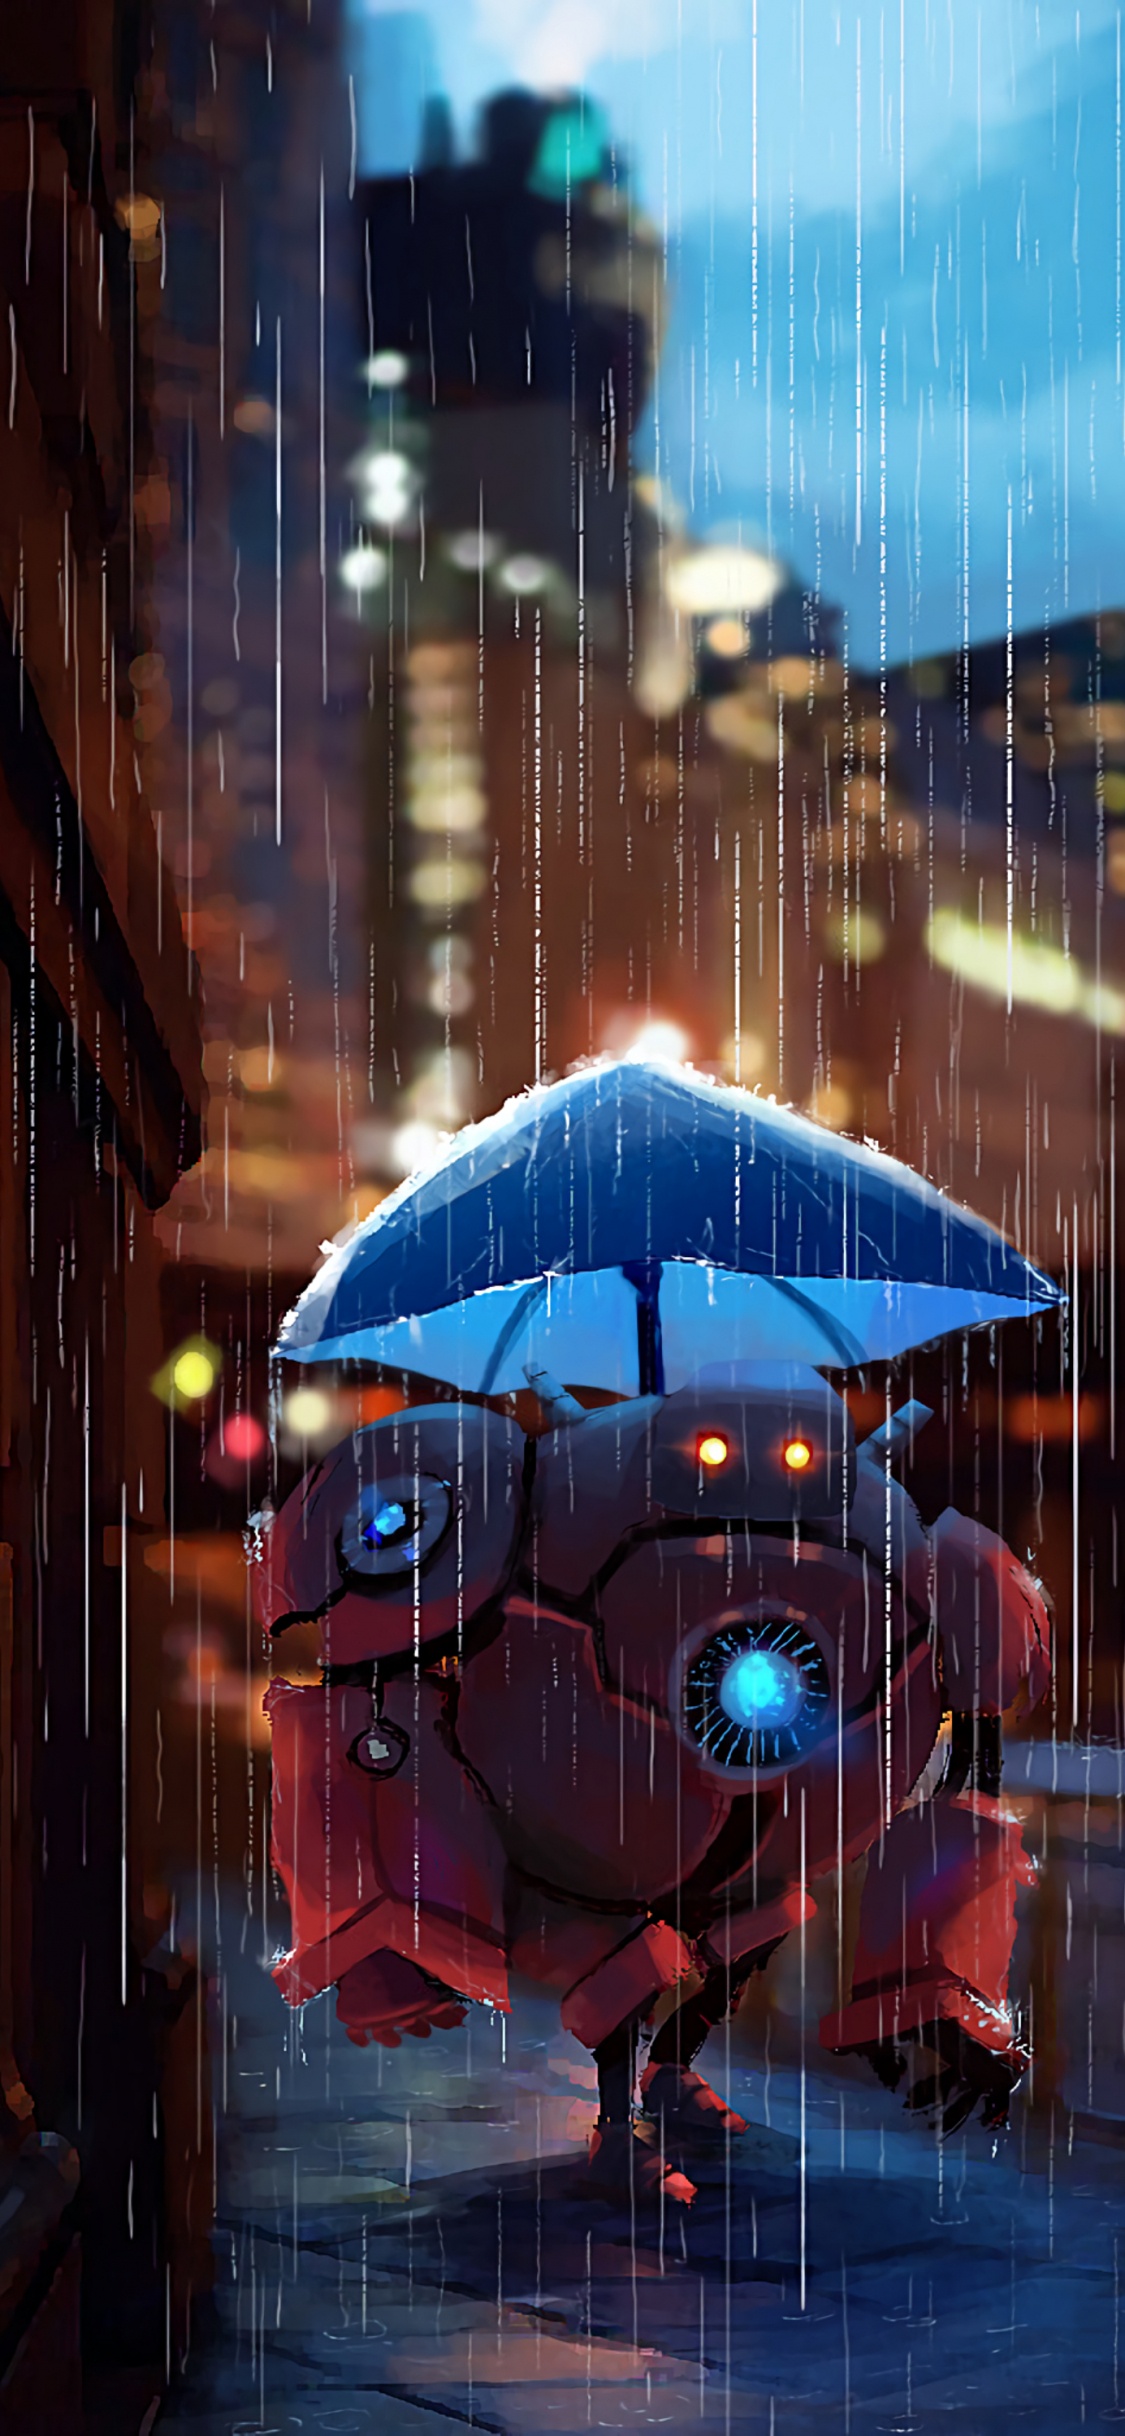 Parapluie Bleu Dans la Ville Pendant la Nuit. Wallpaper in 1125x2436 Resolution